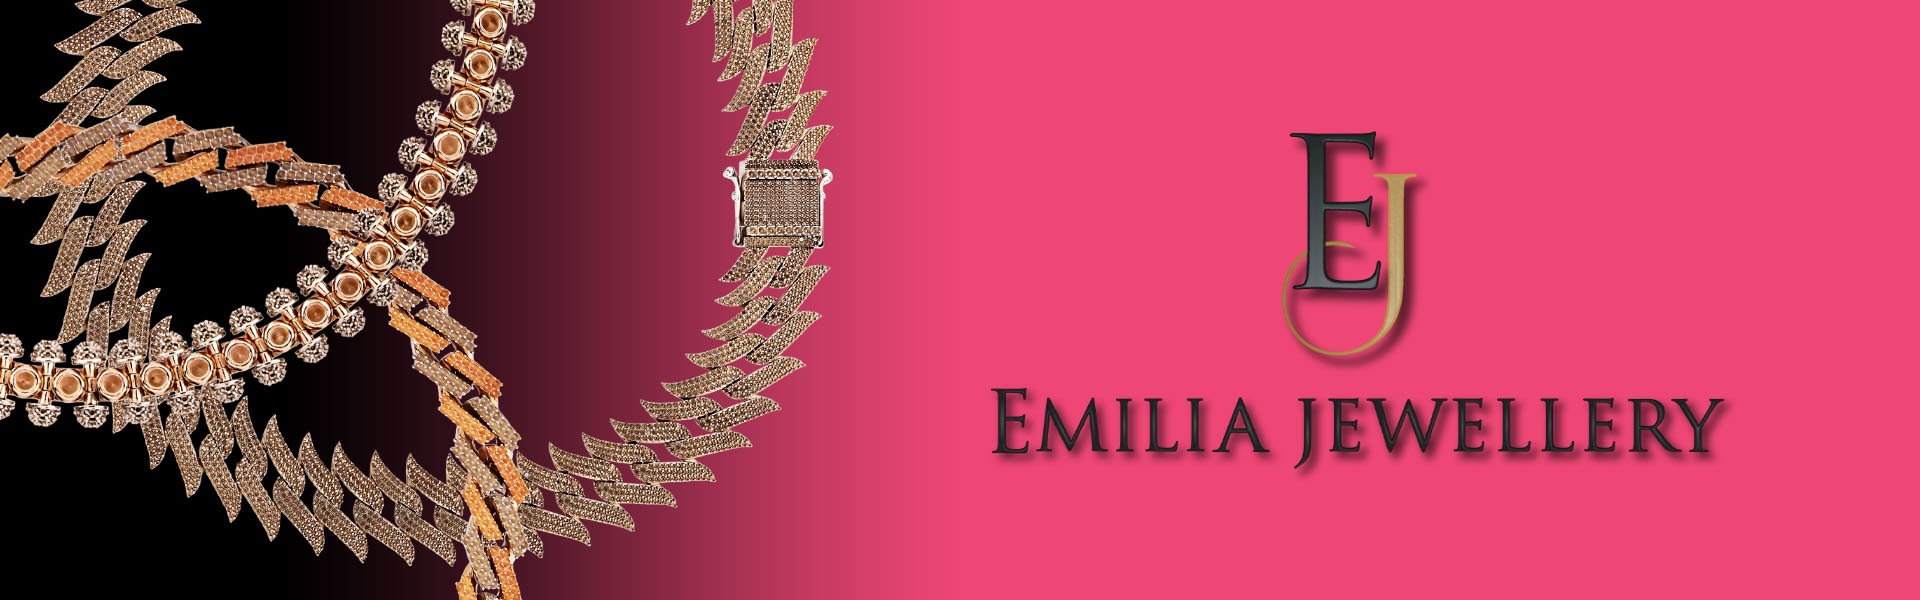 Emilia Jewellery